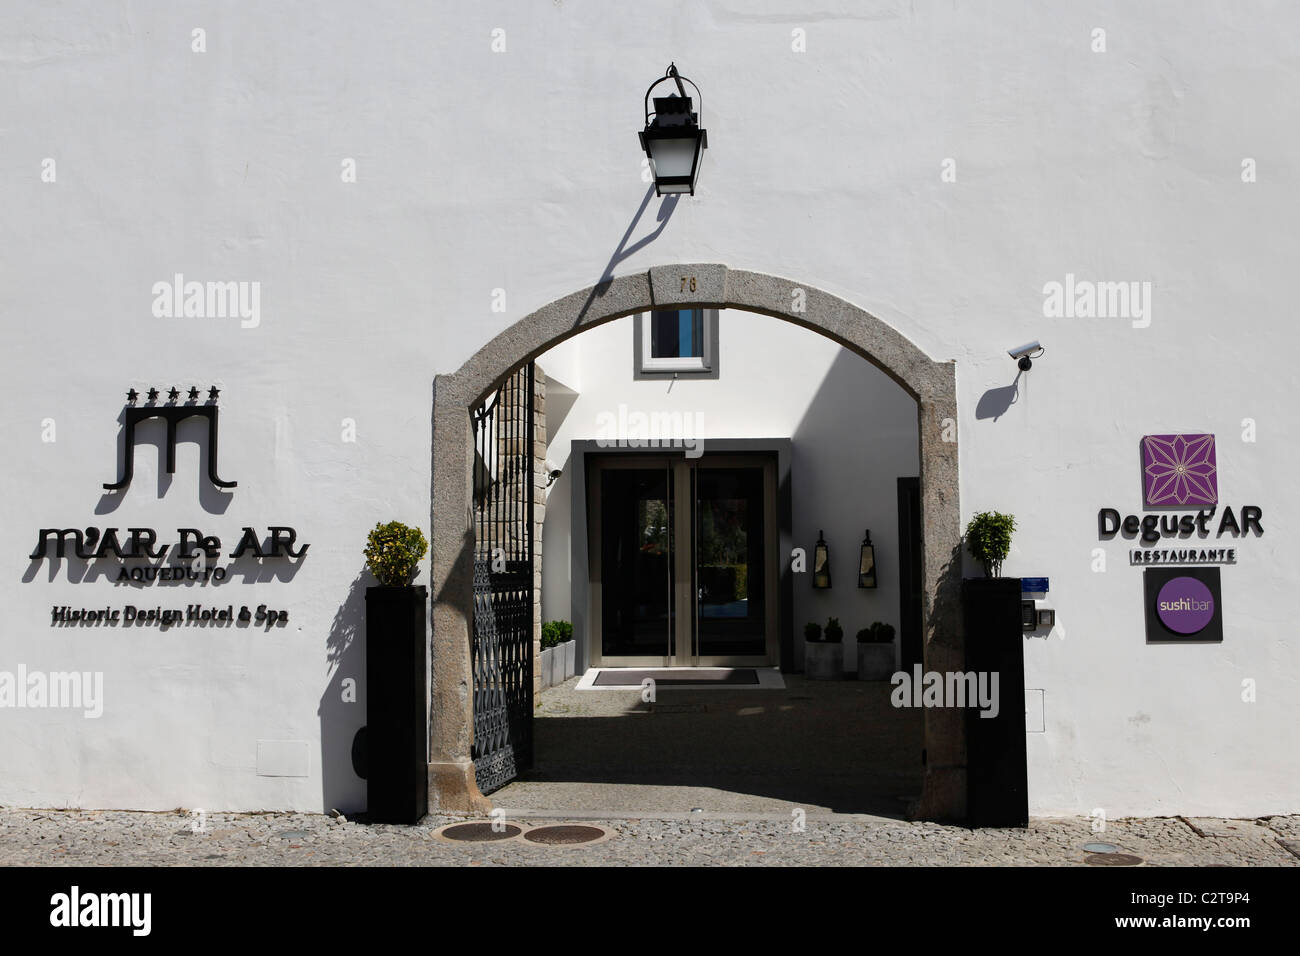 Der Eingang zum M'AR De AR Aqueduto historisches Design Hotel und Spa in Evora, Portugal. Stockfoto